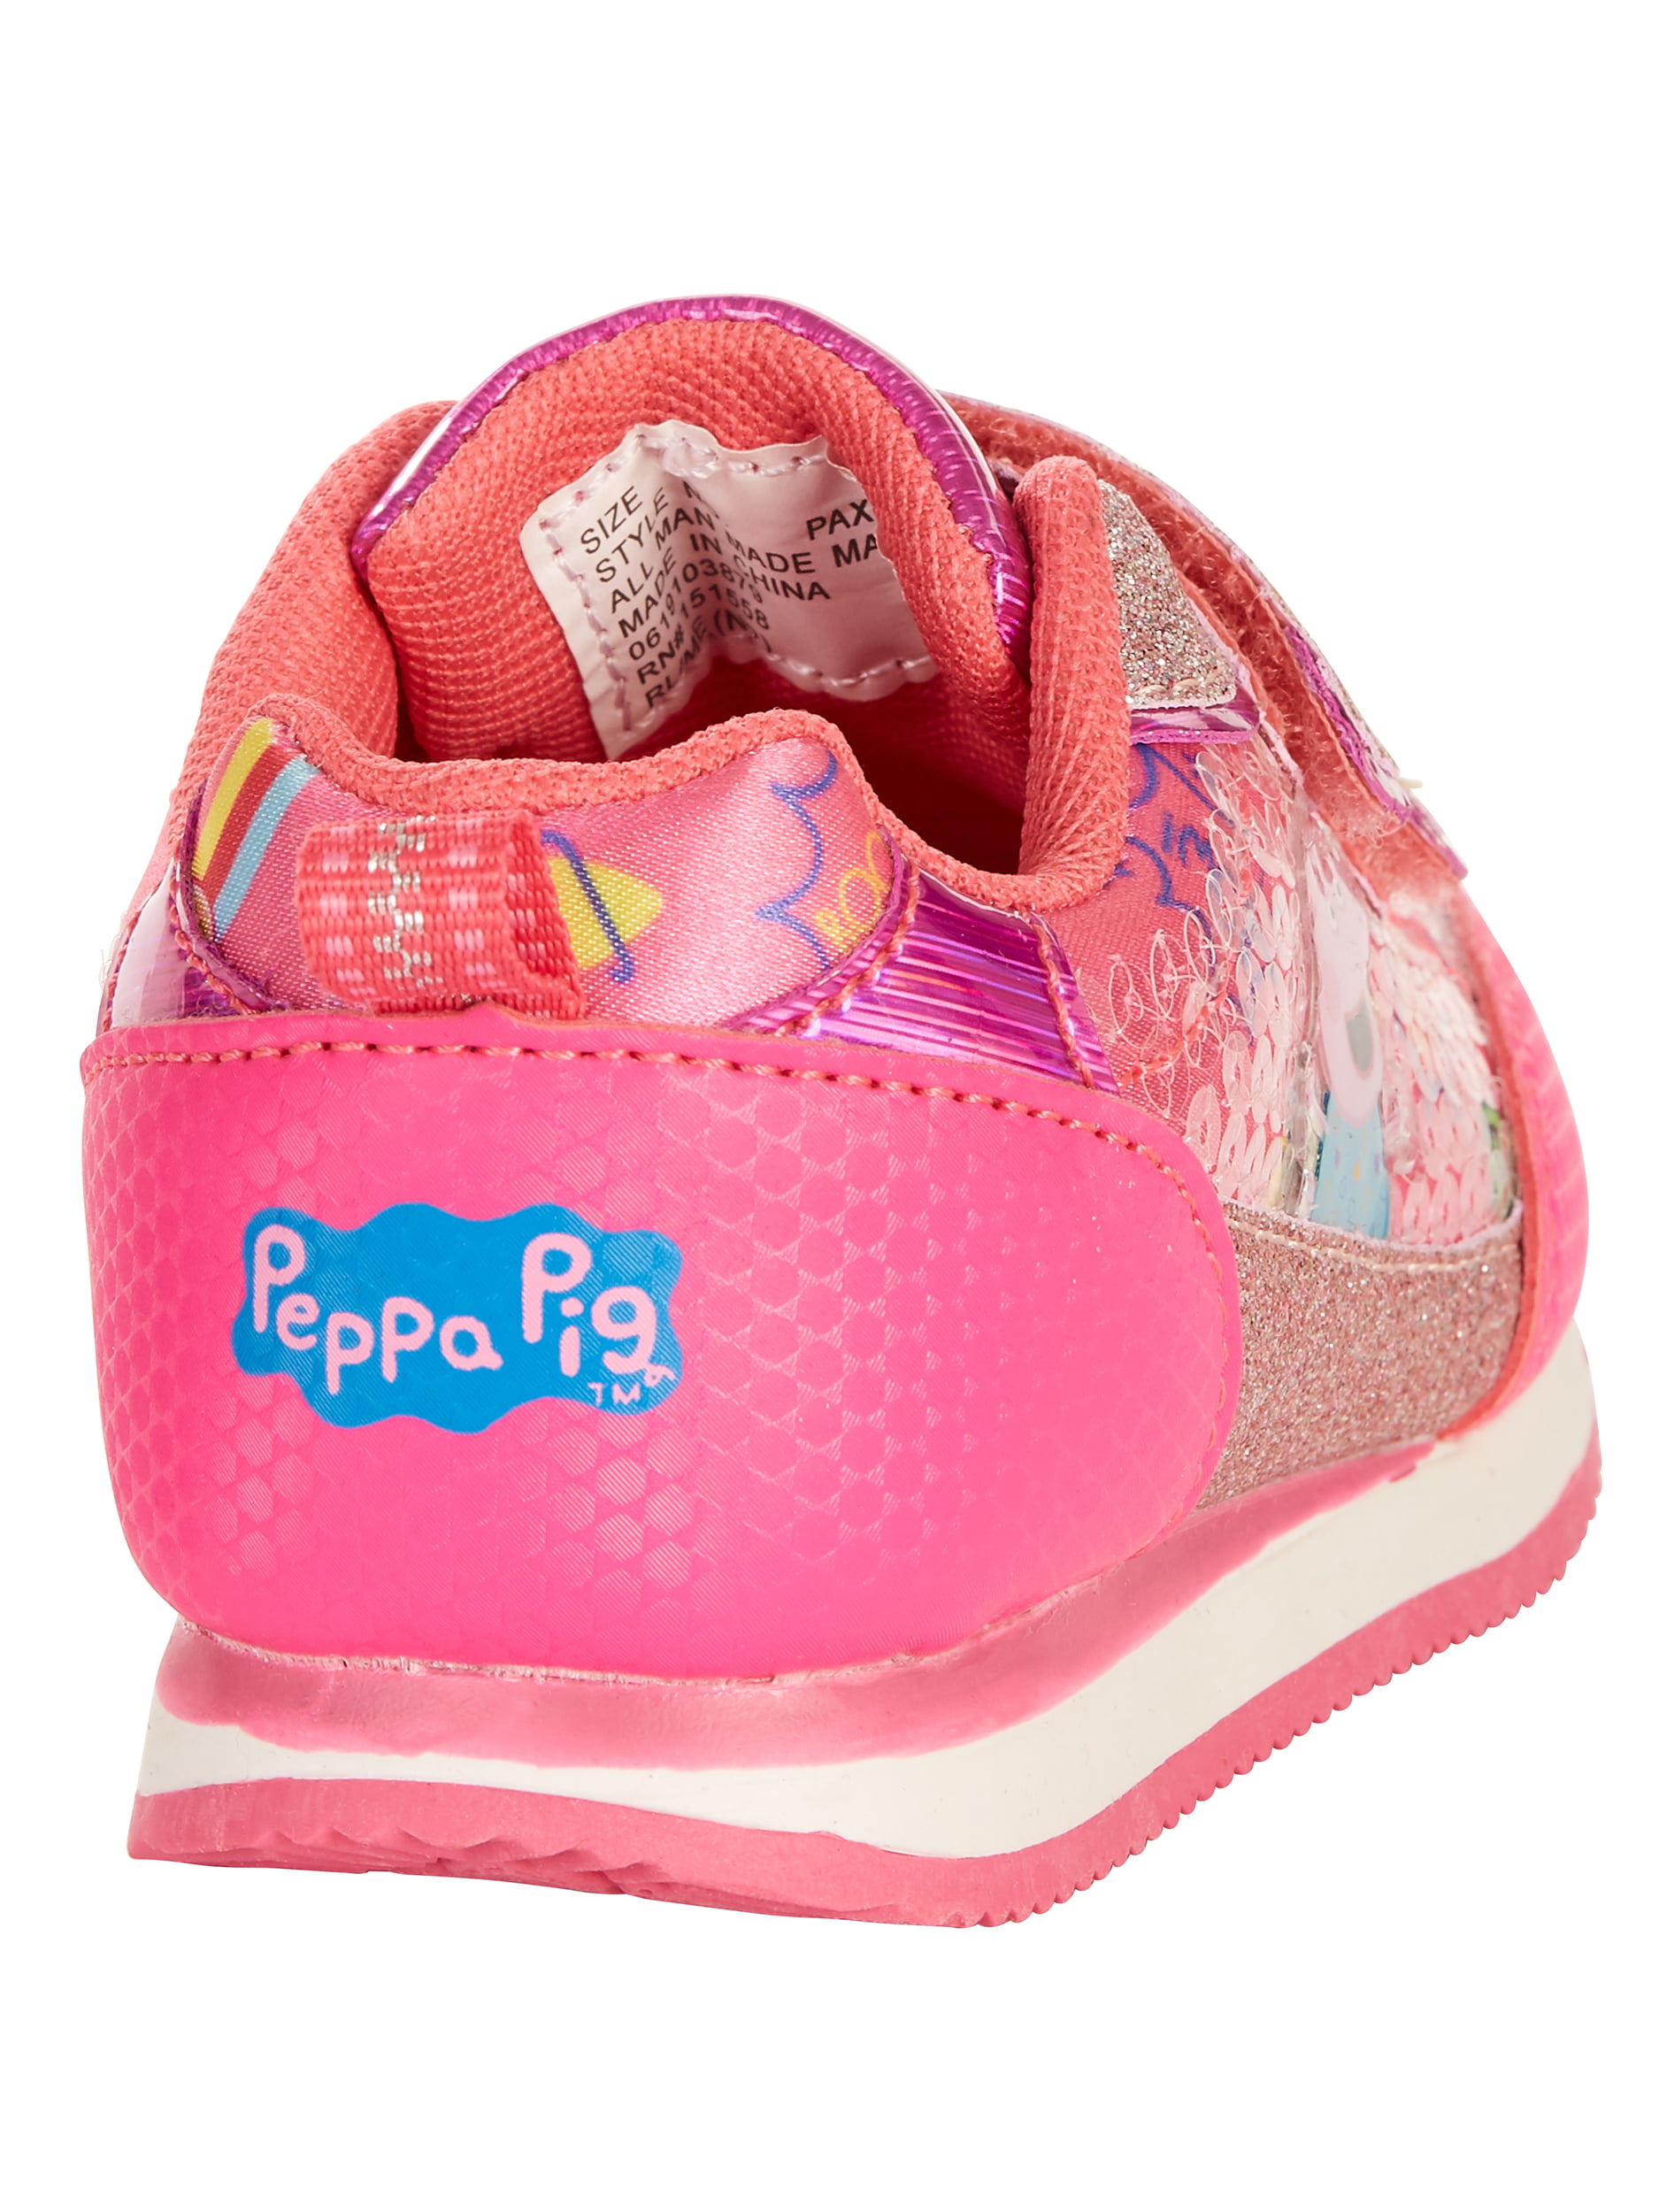 peppa pig tennis shoes